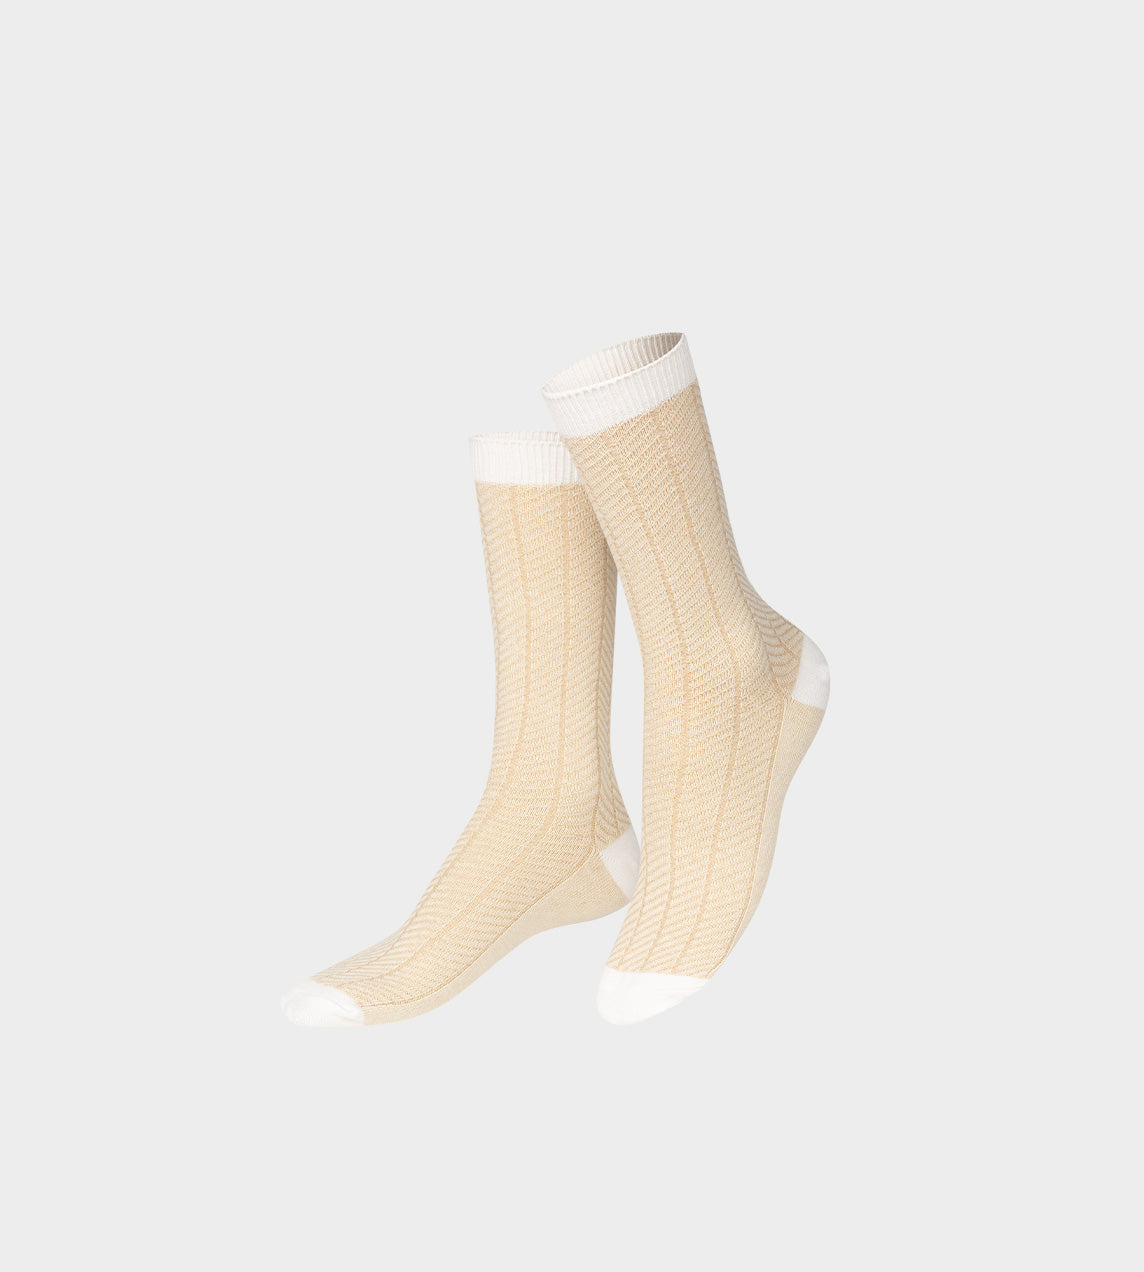 EAT MY SOCKS - Petit Camembert Socks - 1 Pair